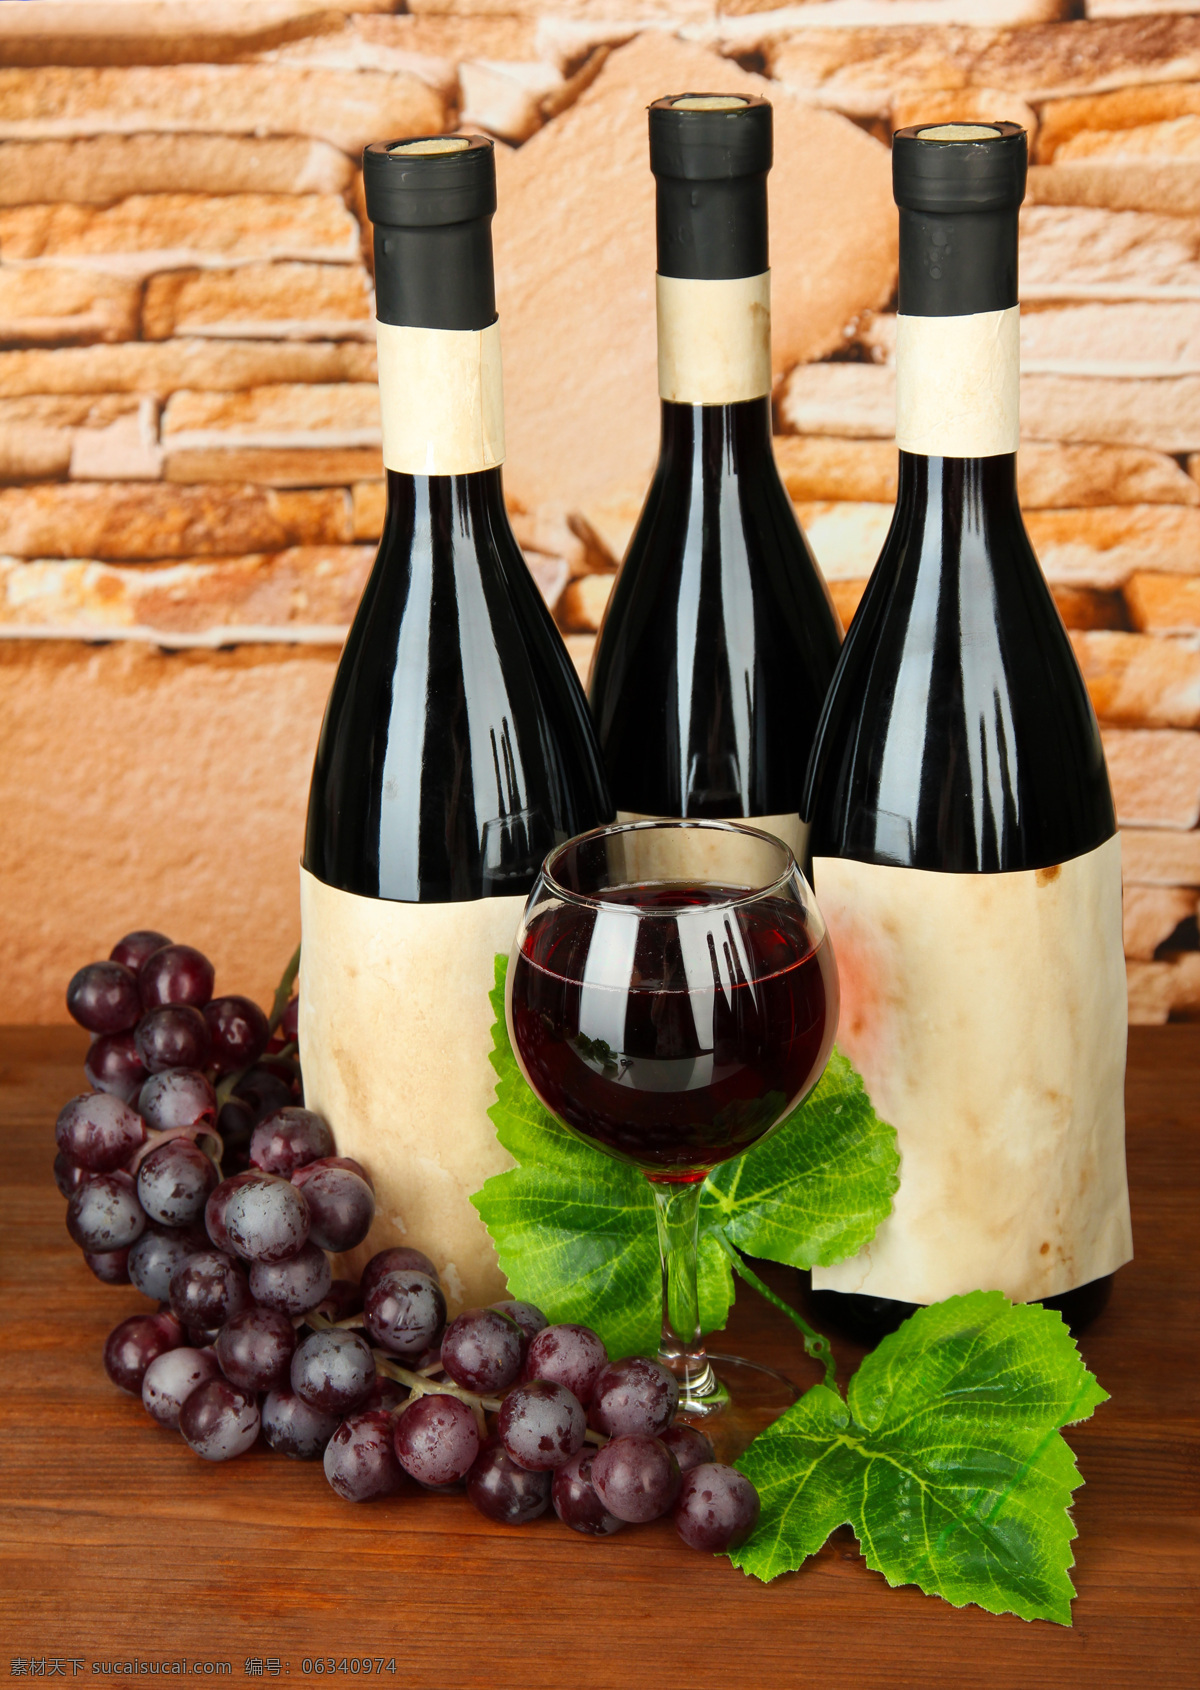 法国红酒高清 红酒高清图片 法国红酒图片 法国红酒 葡萄酒 酒精 红酒